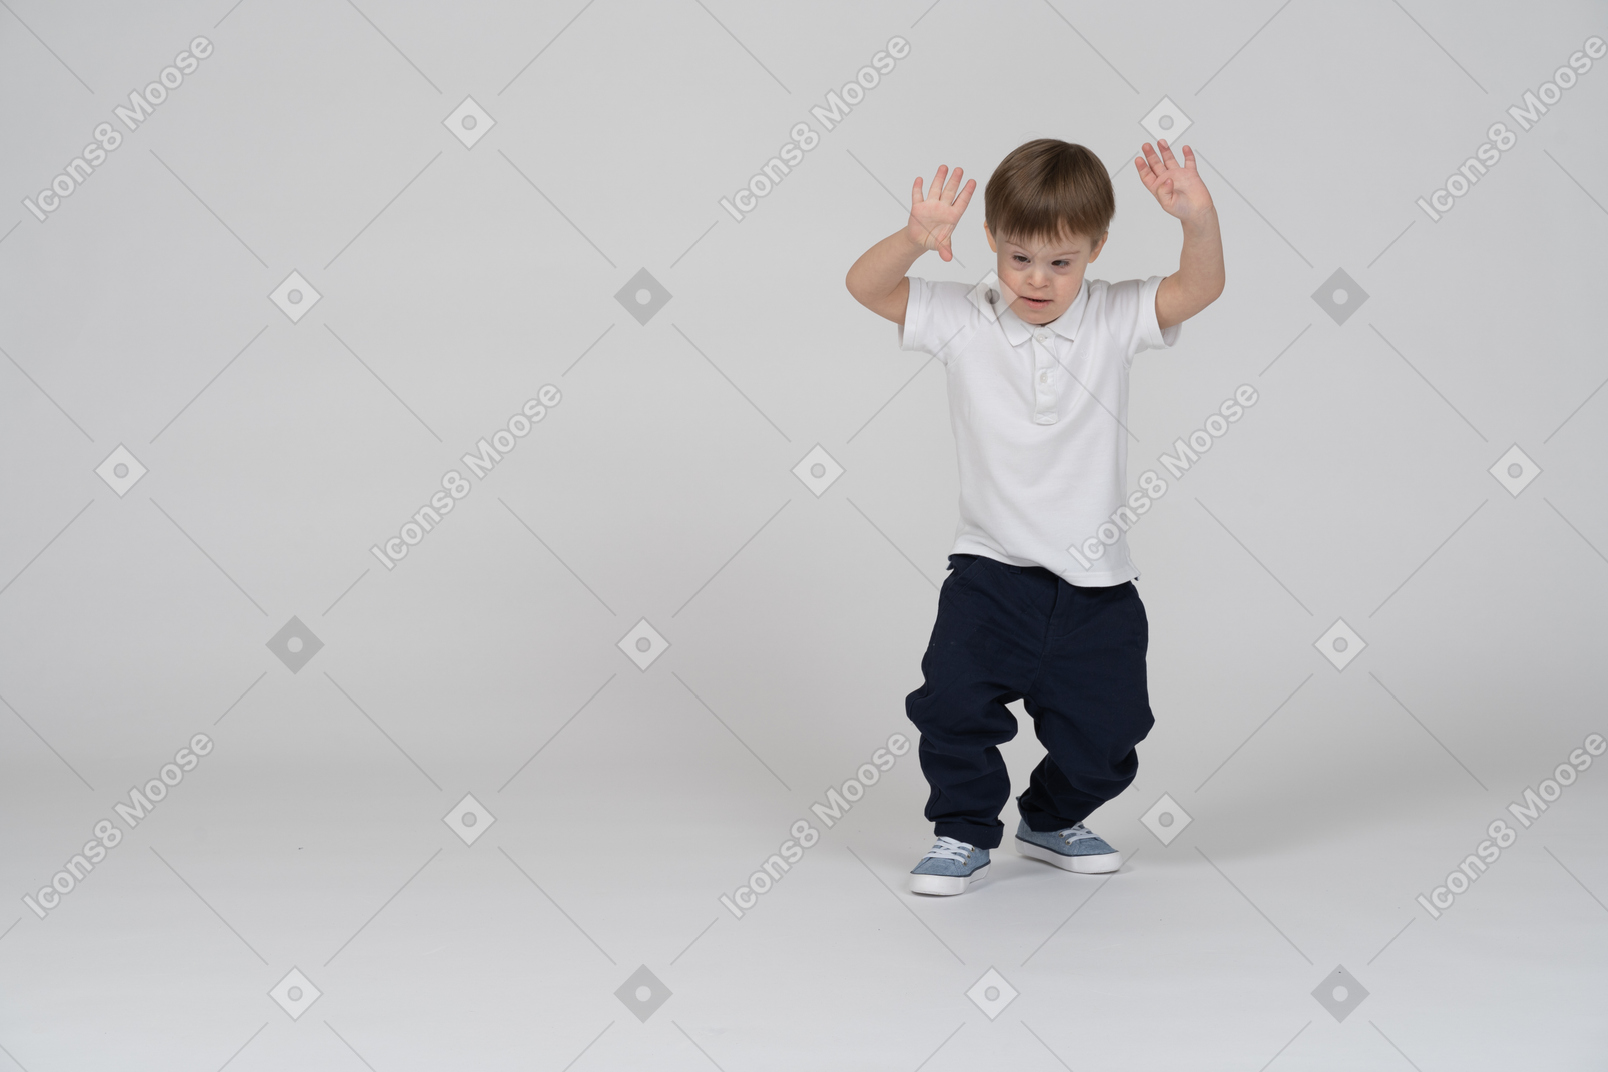 Vue de face d'un garçon légèrement accroupi avec les mains levées